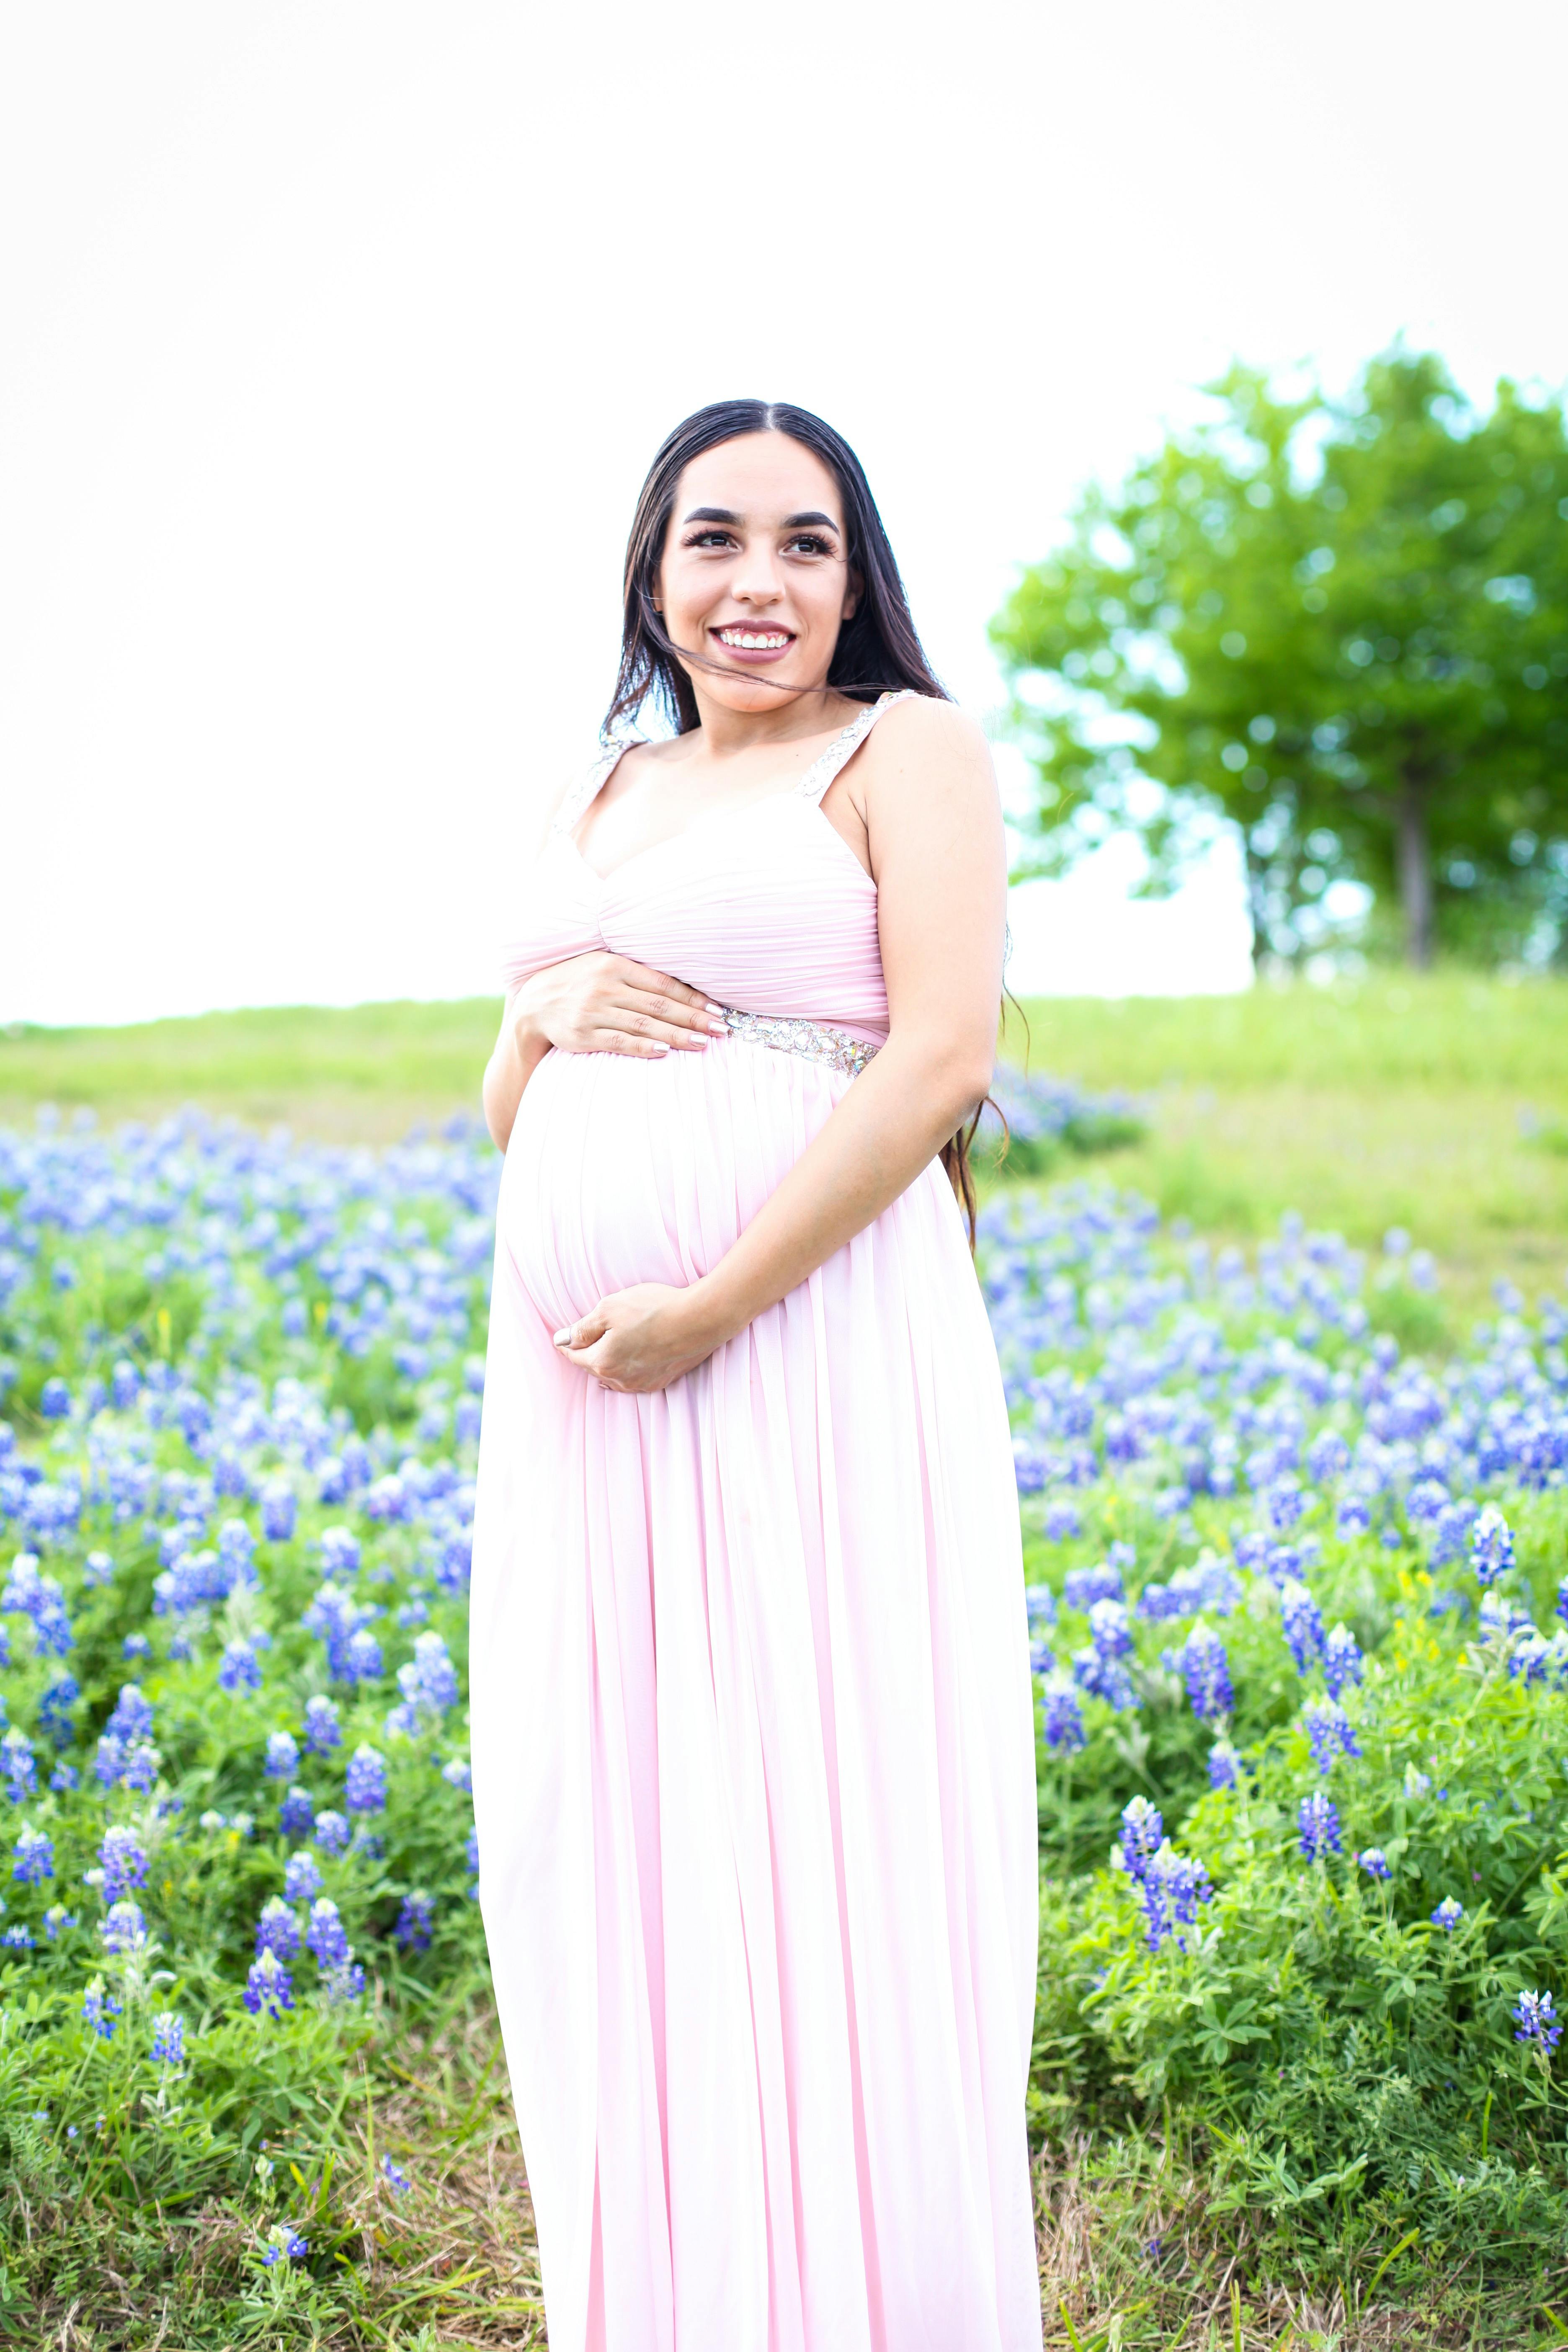 Une femme enceinte souriante | Source : Pexels